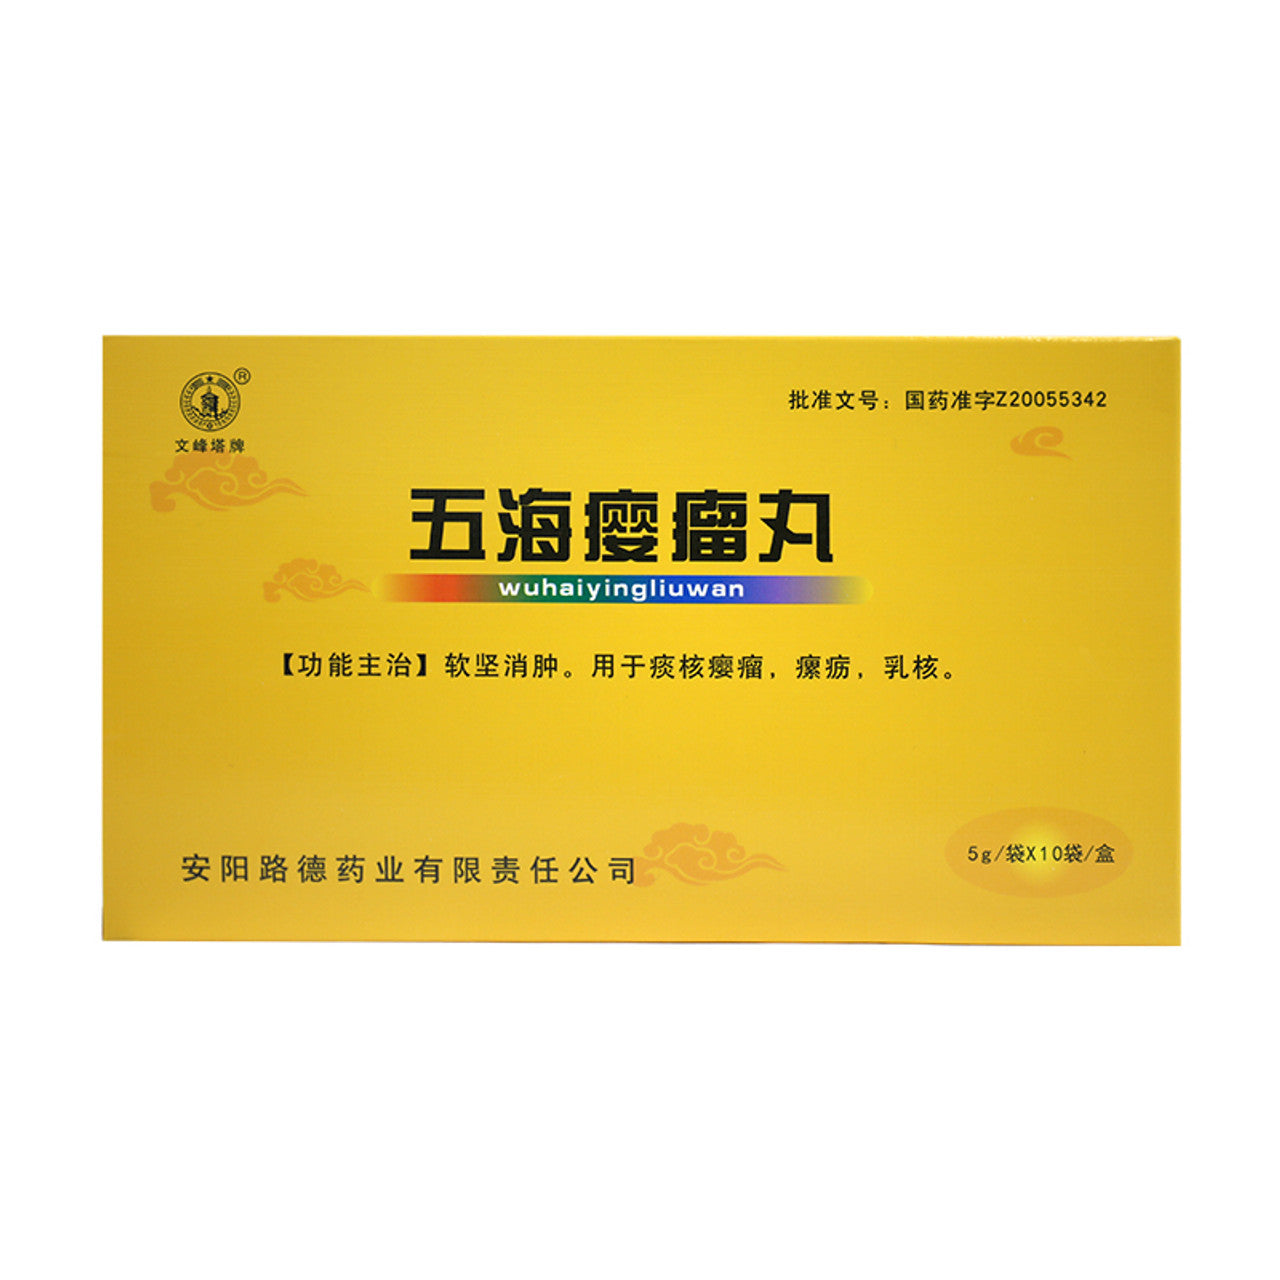 China Herb. Wuhai Yingliu Wan  or Wuhai Yingliu Pills or Wuhaiyingliuwan or Wu Hai Ying Liu Wan for  sputum nuclear galls, scrofula, breast nucleus.